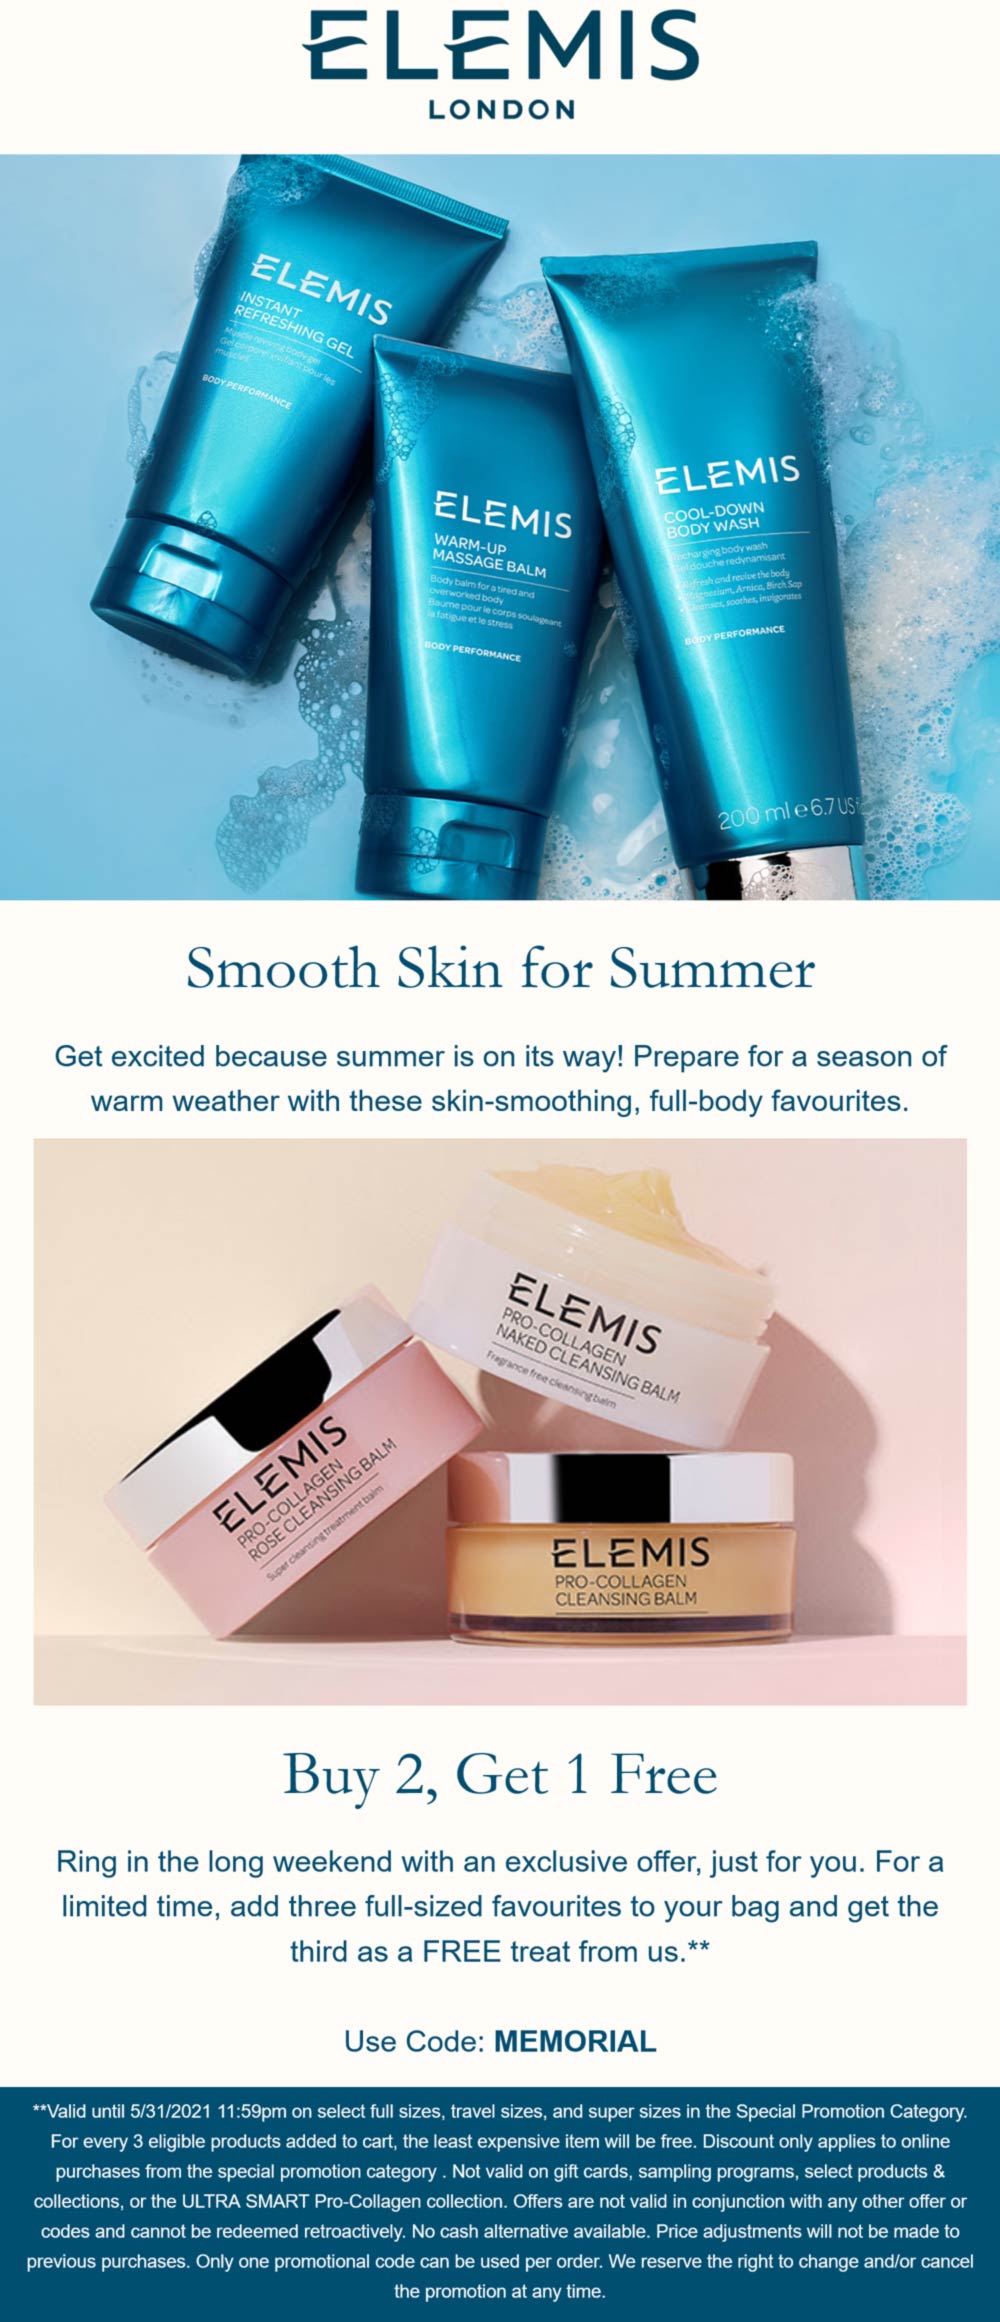 Elemis stores Coupon  3rd full size cosmetic free at Elemis via promo code MEMORIAL #elemis 